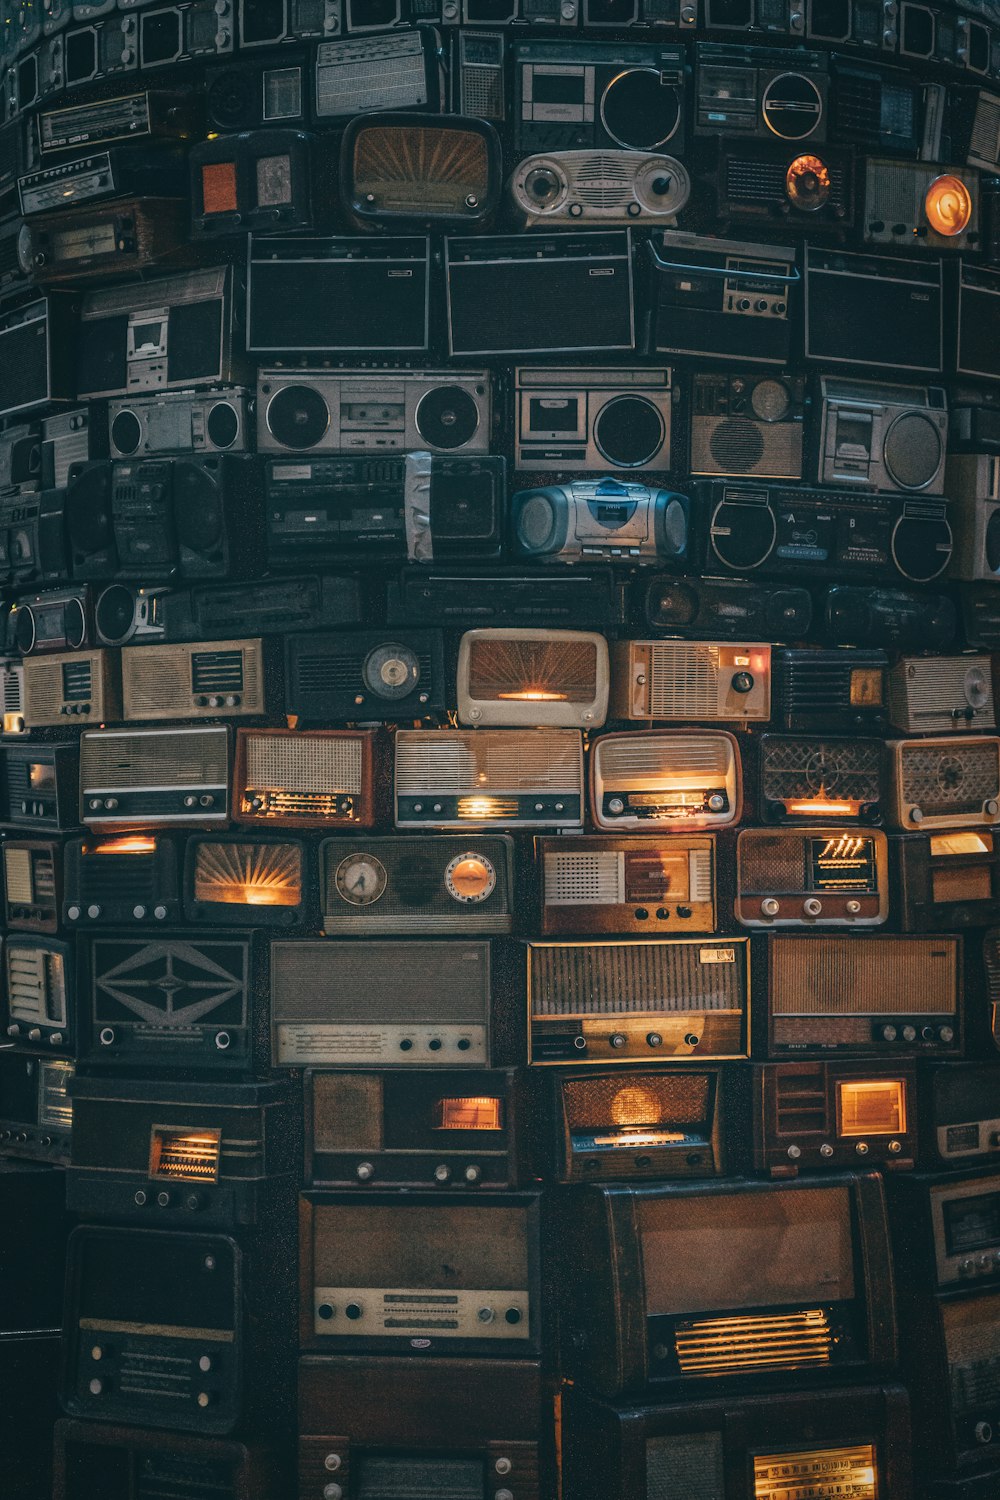 uma grande quantidade de rádios antigos empilhados uns sobre os outros